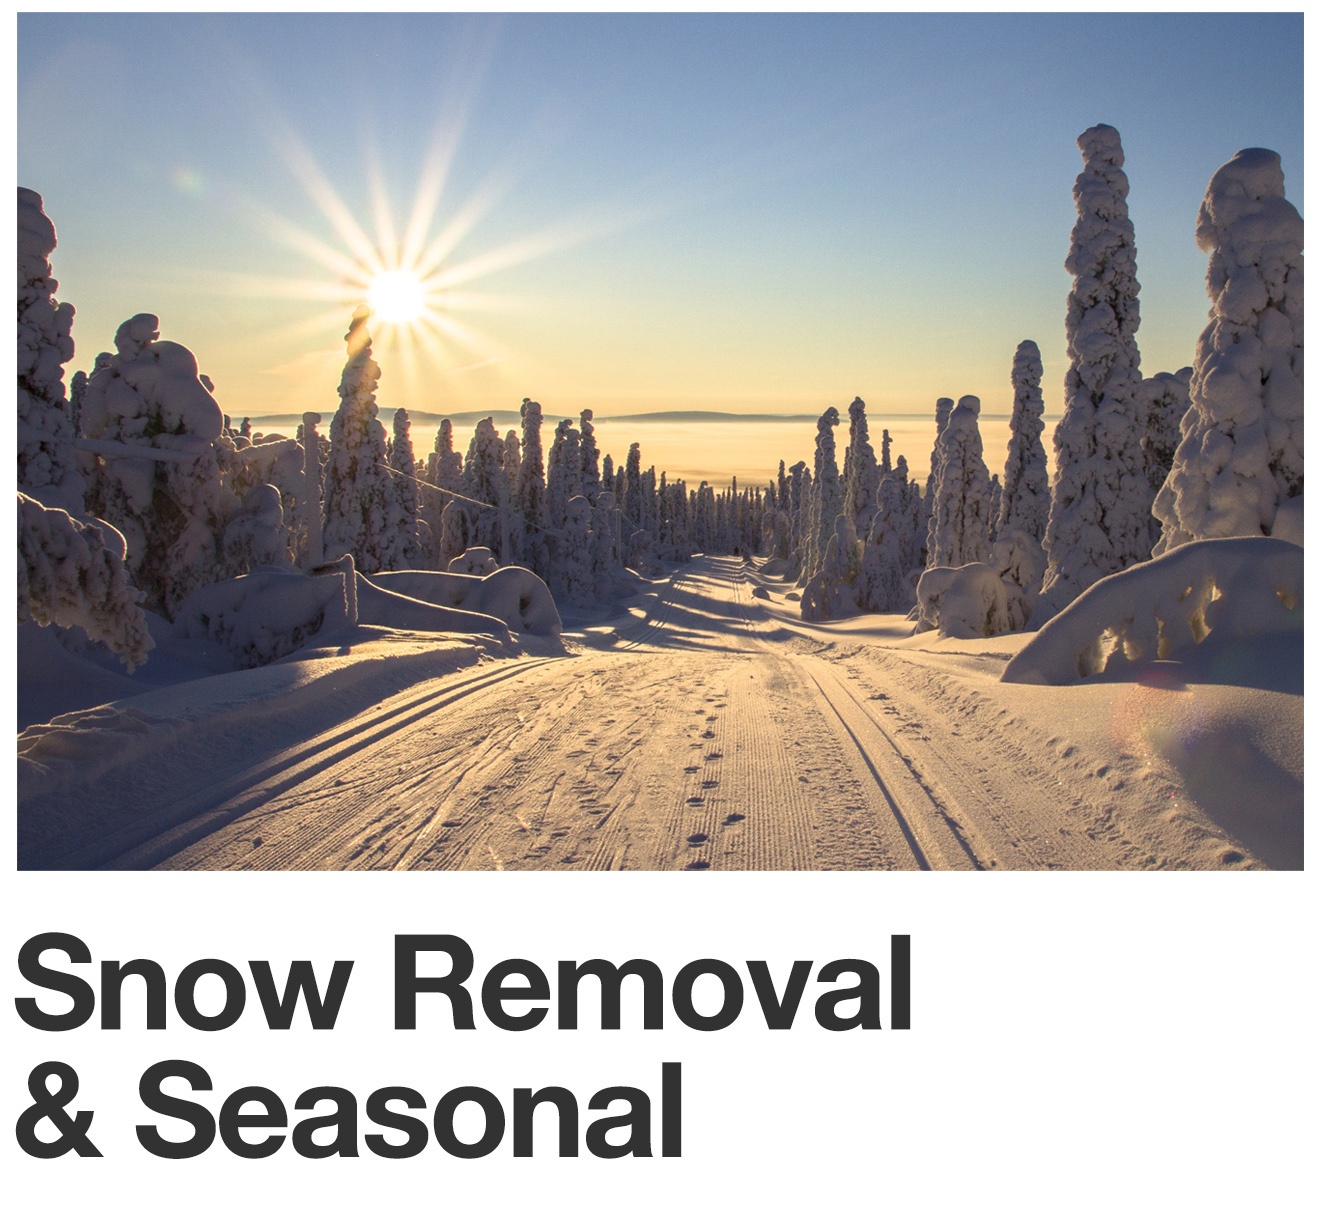 Snow Removal & Seasonal